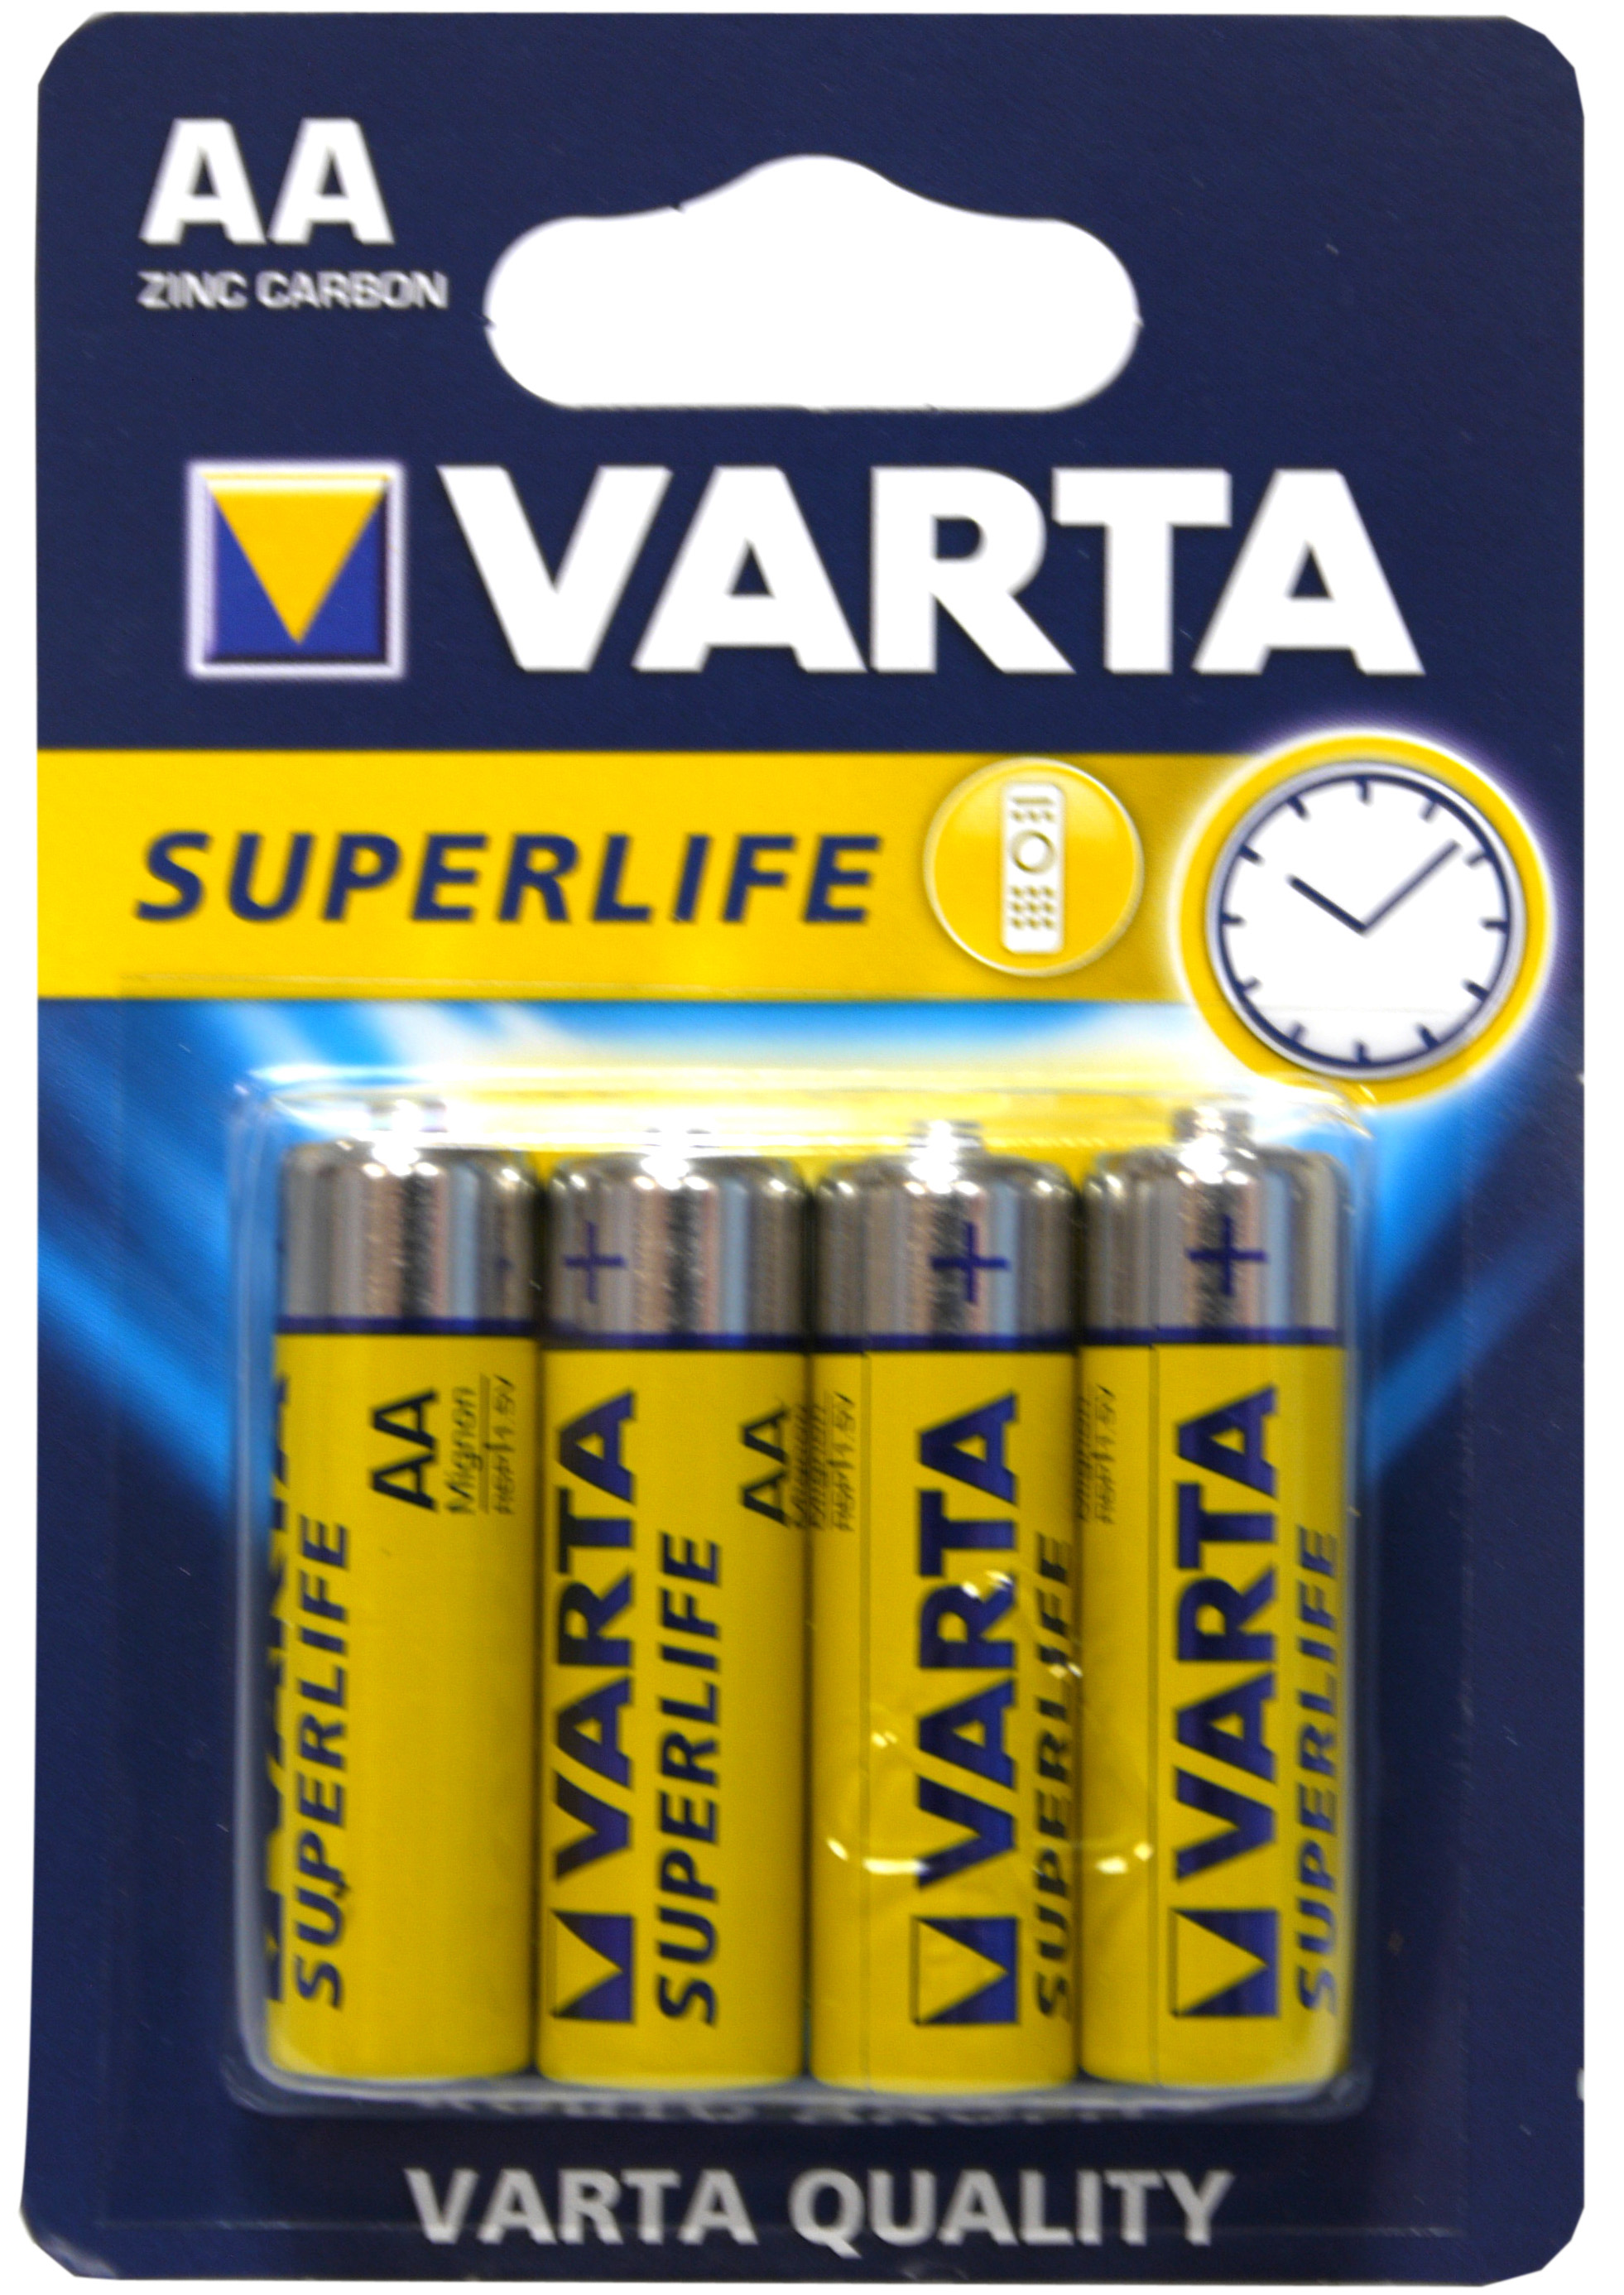 53521 - varta batteries, superlife, mignon/aa, set of 4